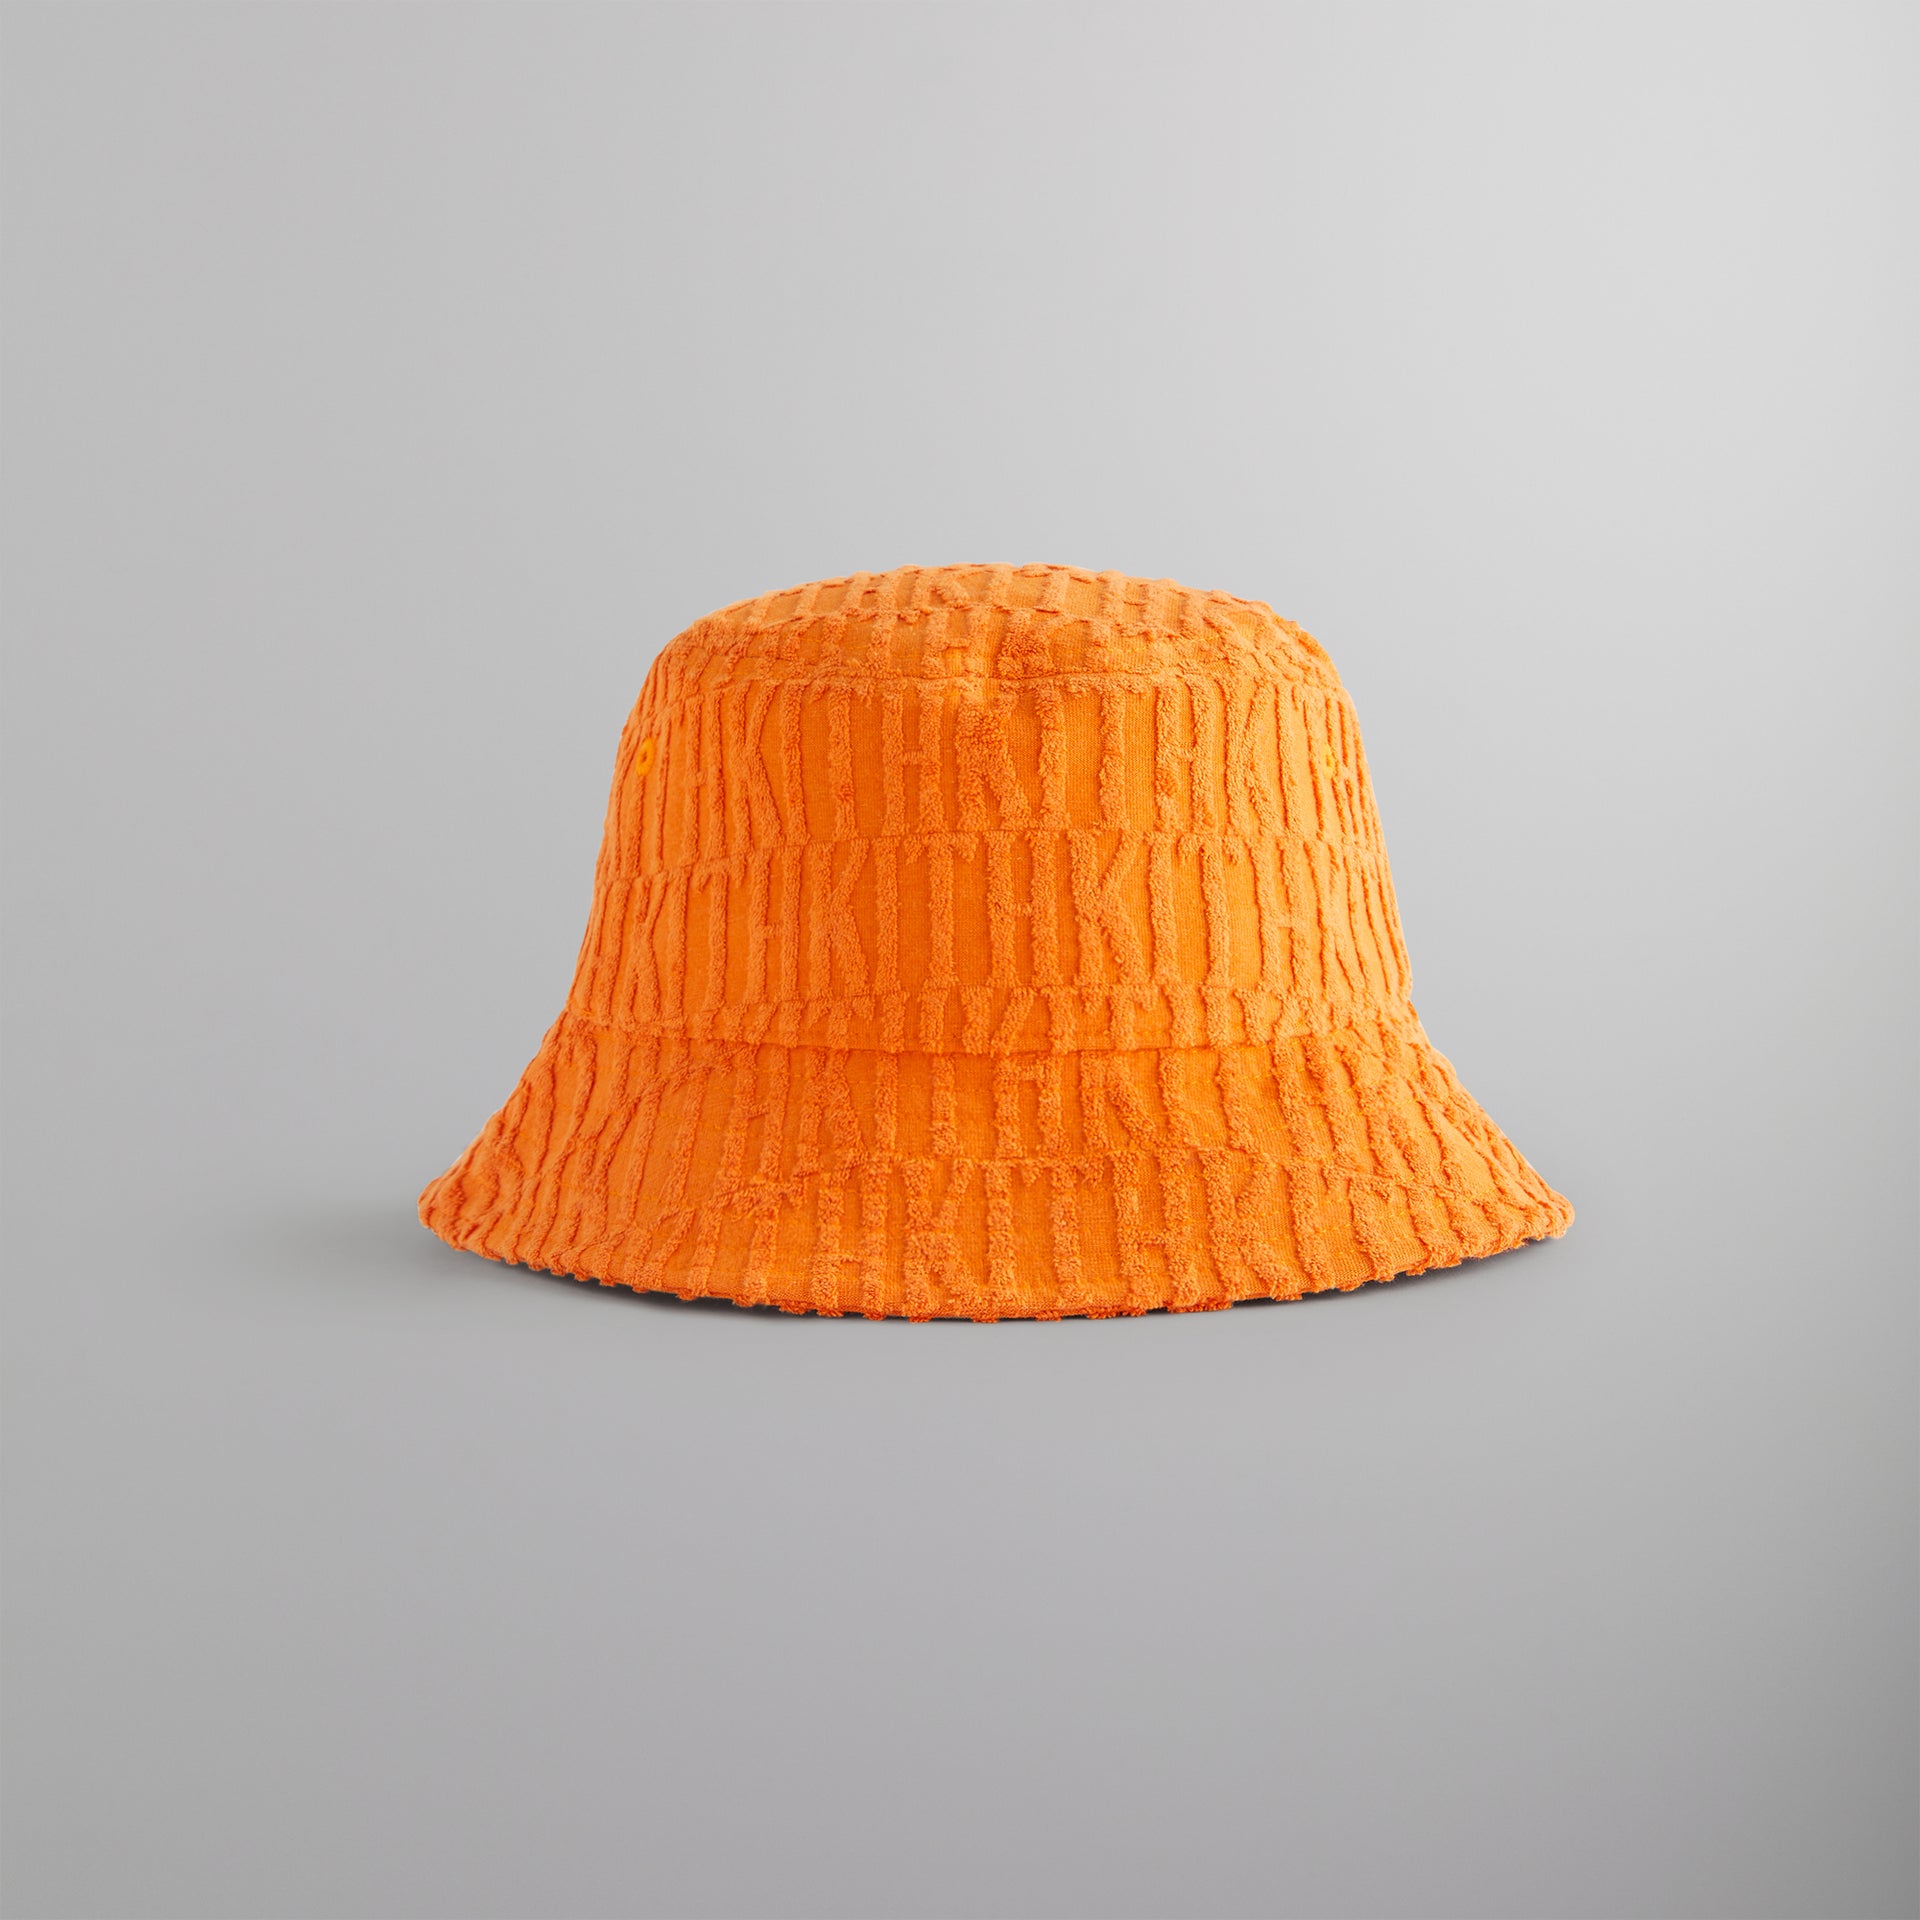 Kith Dawson Terry Monogram Camper Bucket Hat - Clementine